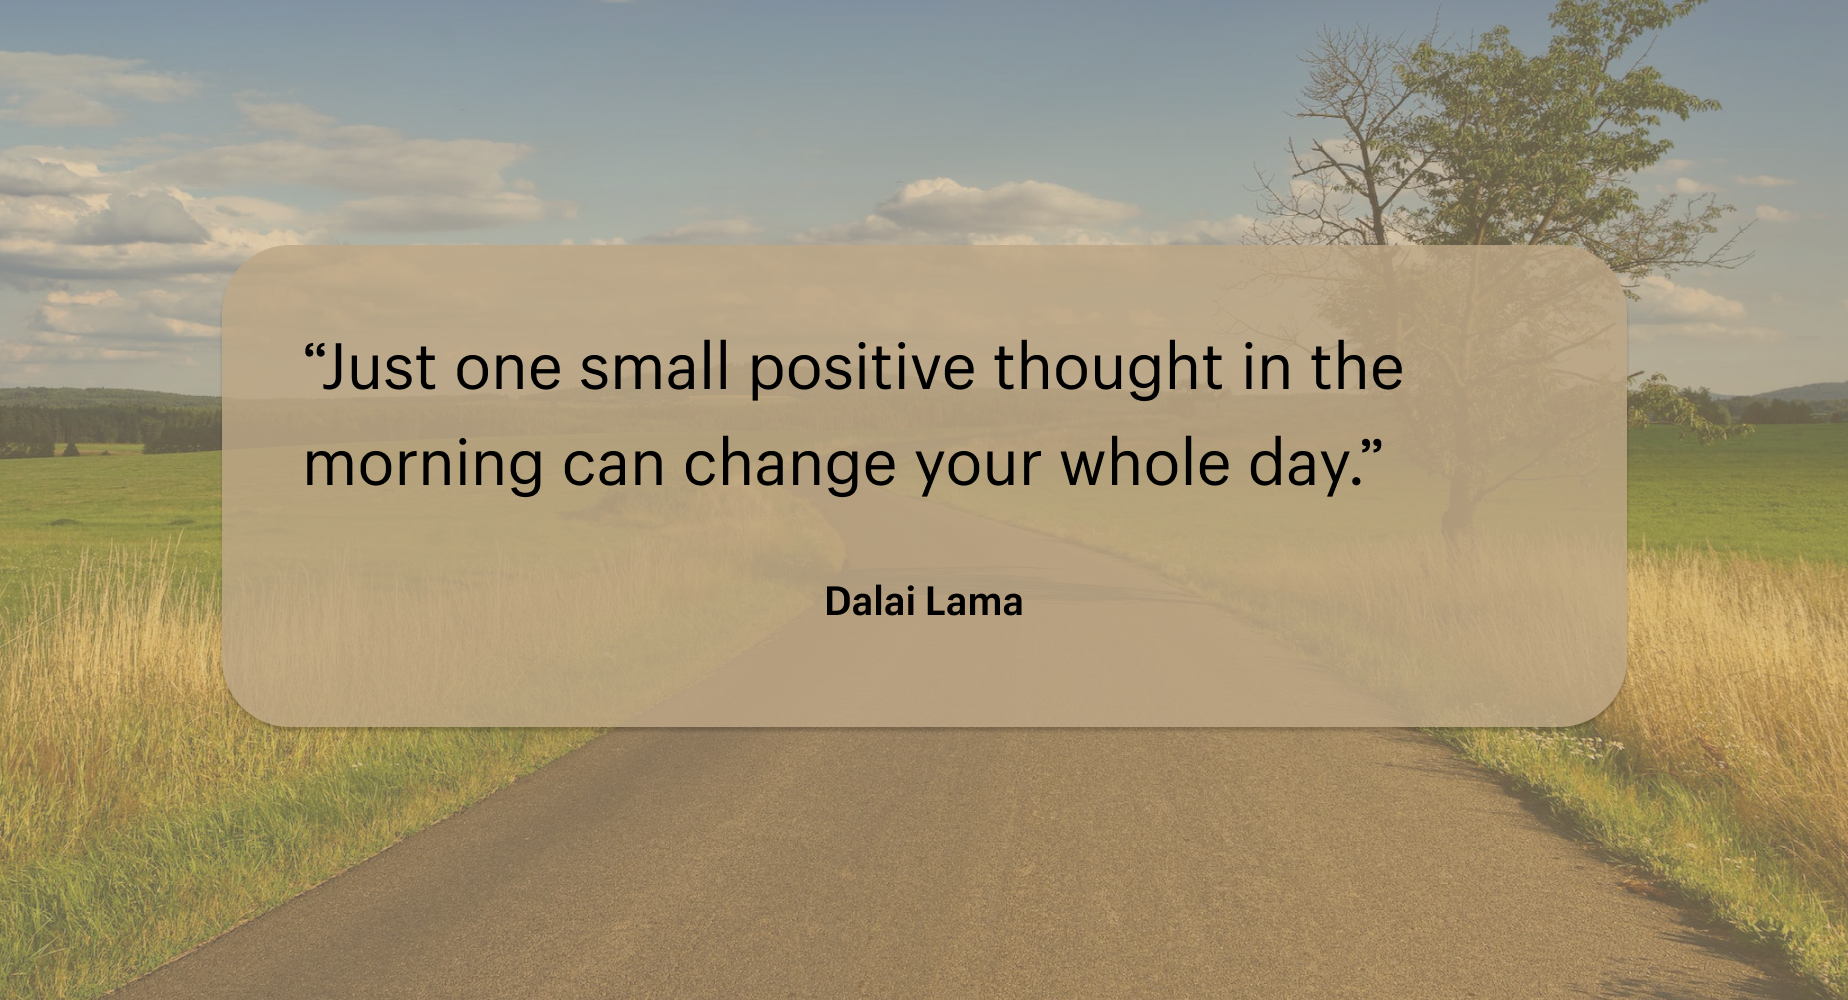 “早晨一个积极的想法就可以改变一整天。”——达赖·喇嘛